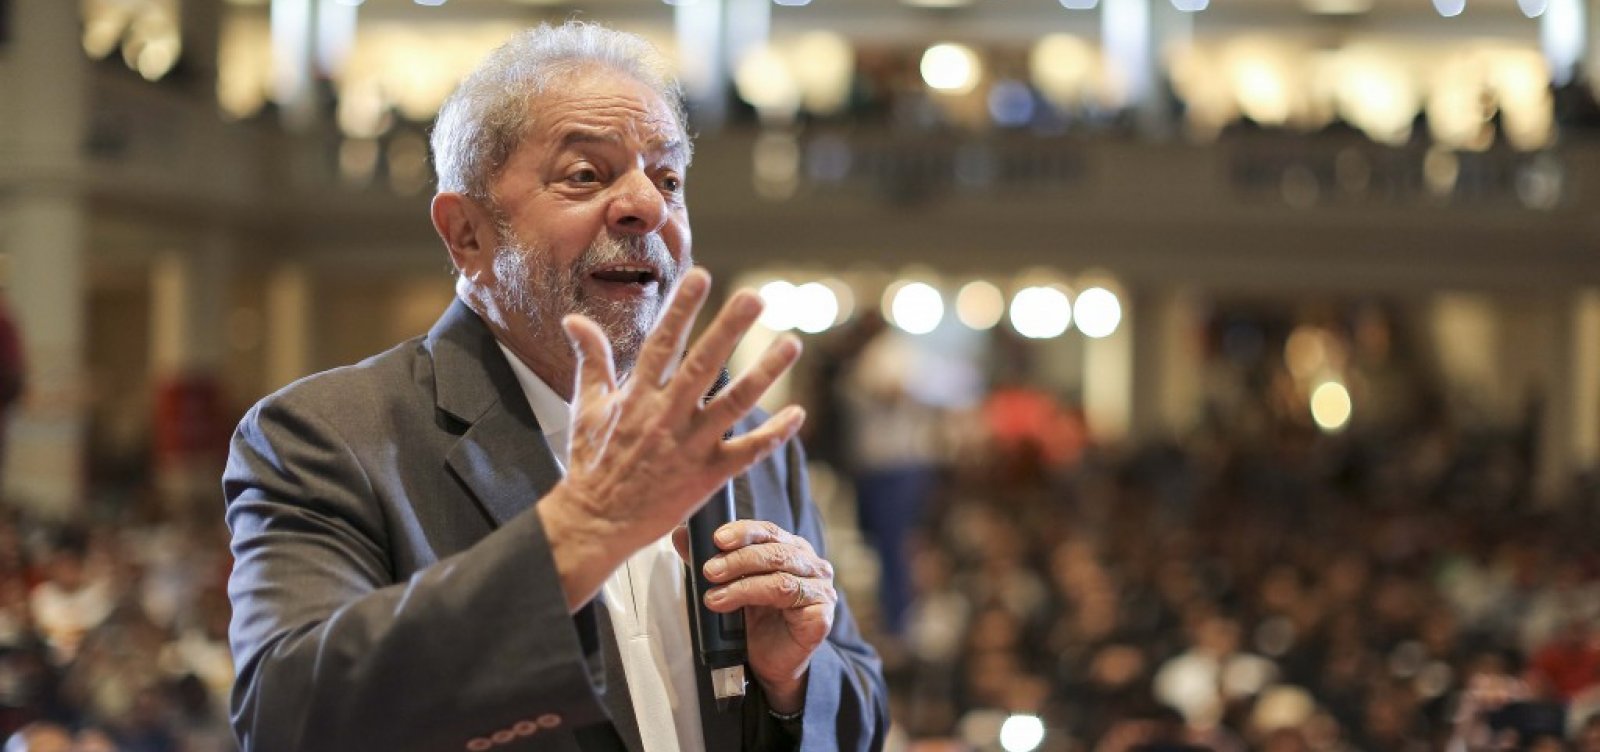 Ideia de negar liminarmente registro de candidatura de Lula perde força no TSE